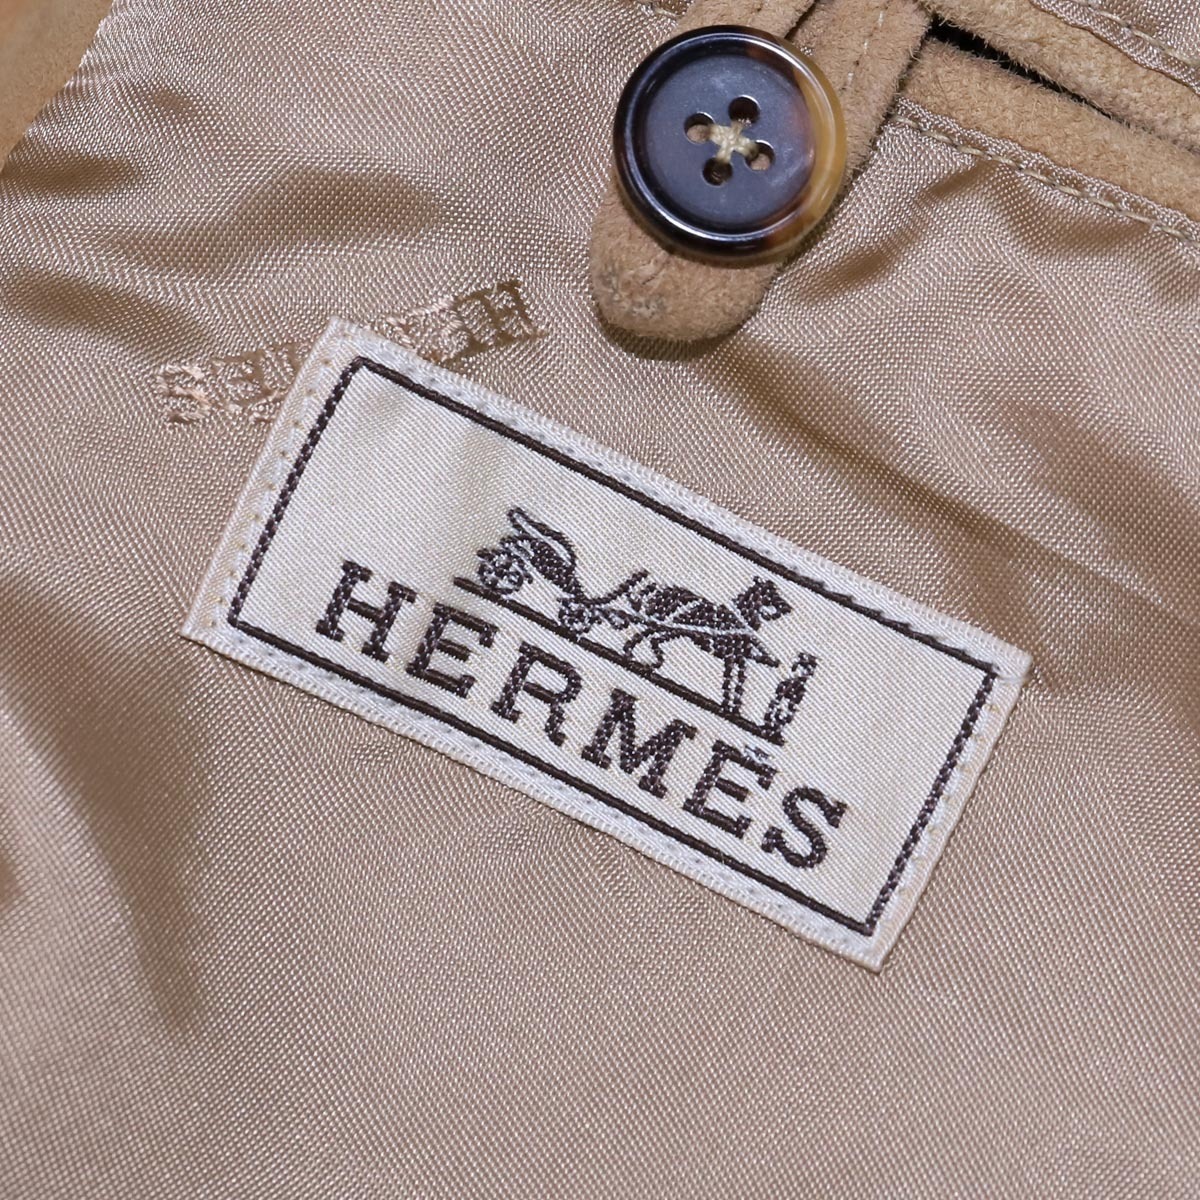 本物 超美品 エルメス 最高級ラムスキン ハンドステッチストライプ ririジップ レザーブルゾン メンズ56 アウター ジャケット HERMES_画像8